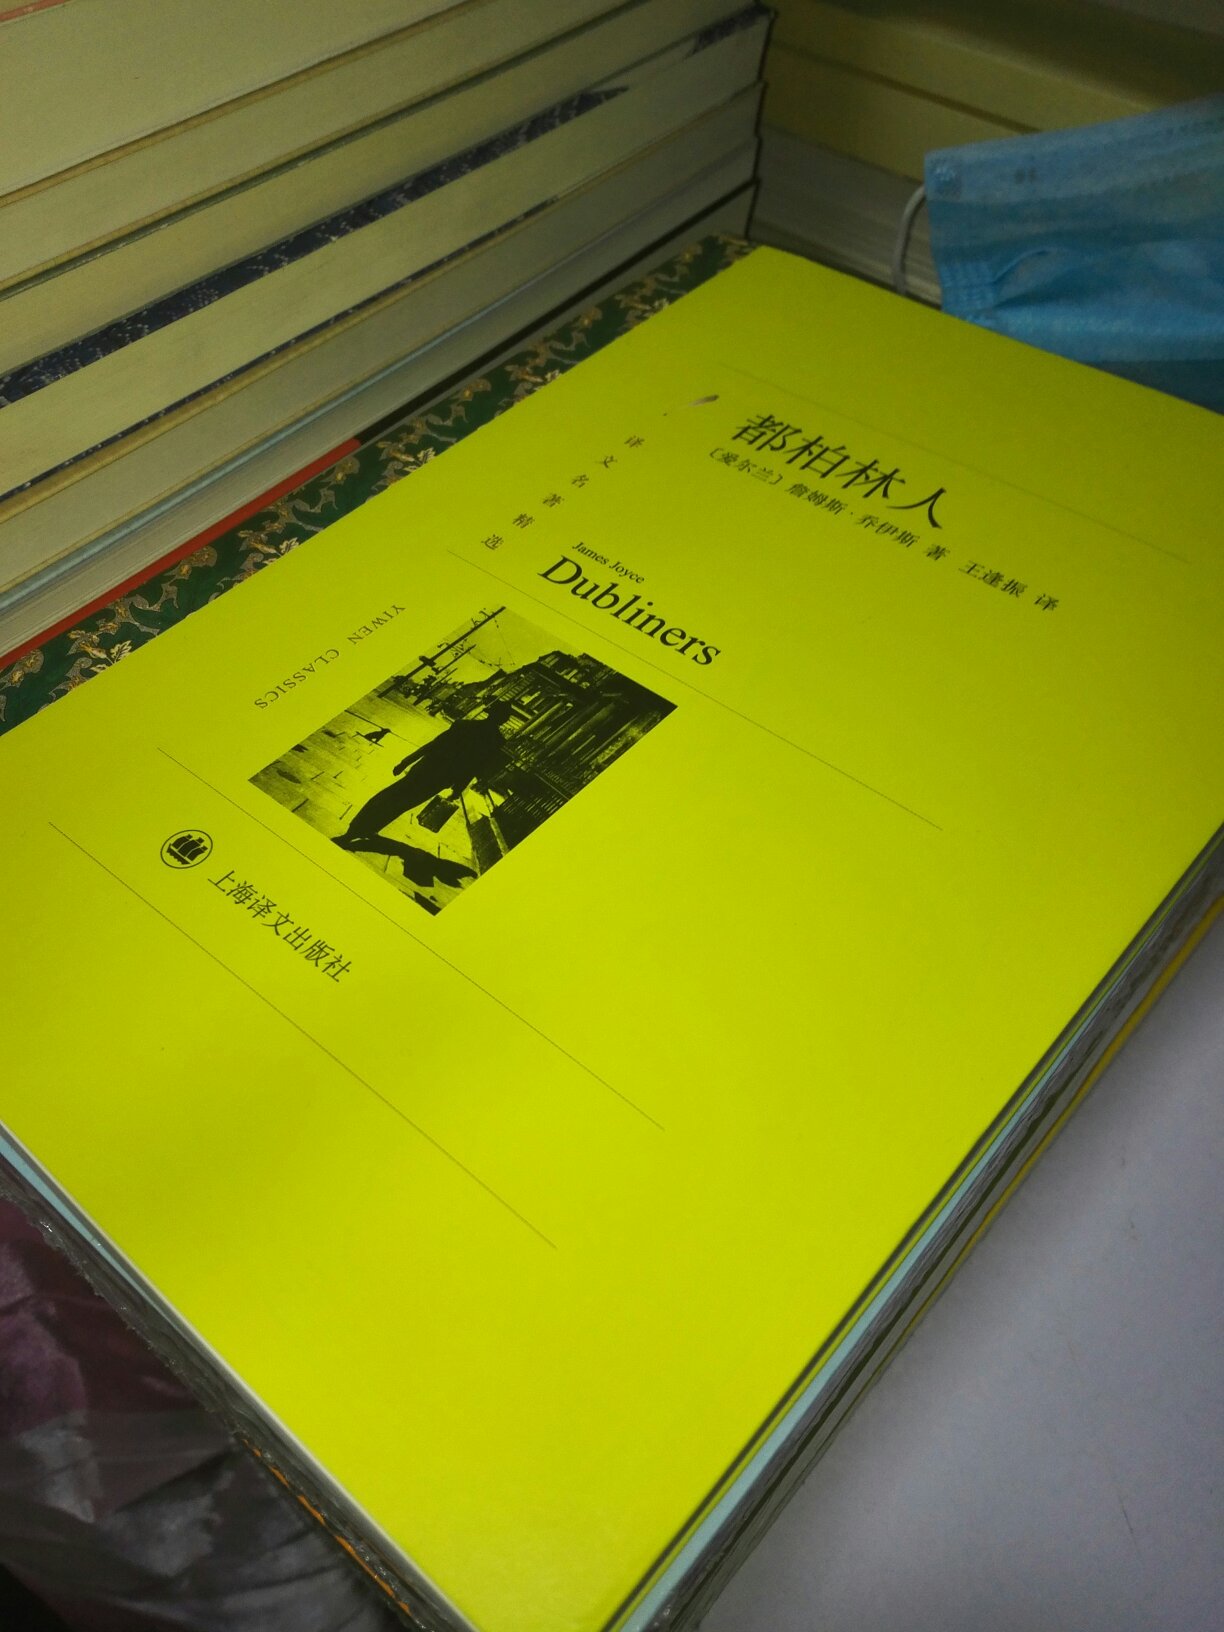 不错的书哦。"译文名著精选"是上海译文出版社出版的外国名著类丛书，版本全部来自之前的“译文名著文库”，也有新增加的书目。书目有所精简，因而称为“译文名著精选”。全部为全译本，平装32开。目前共有六辑，120部图书。中文名译文名著精选出版社上海译文出版社类别译本装帧平装纸张32开辑数6